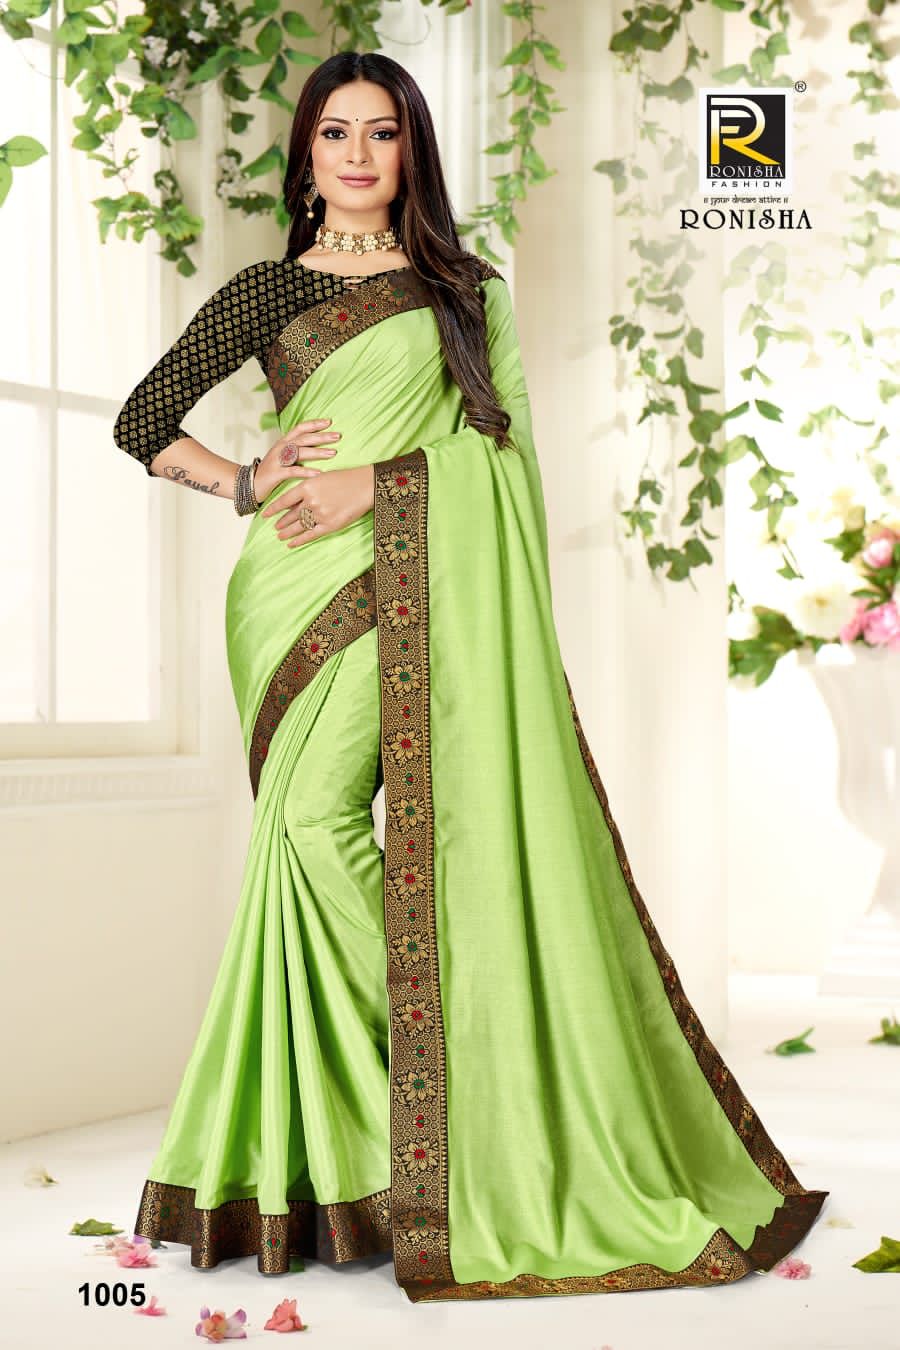 Ronisha Fashion Rajkumari 1005